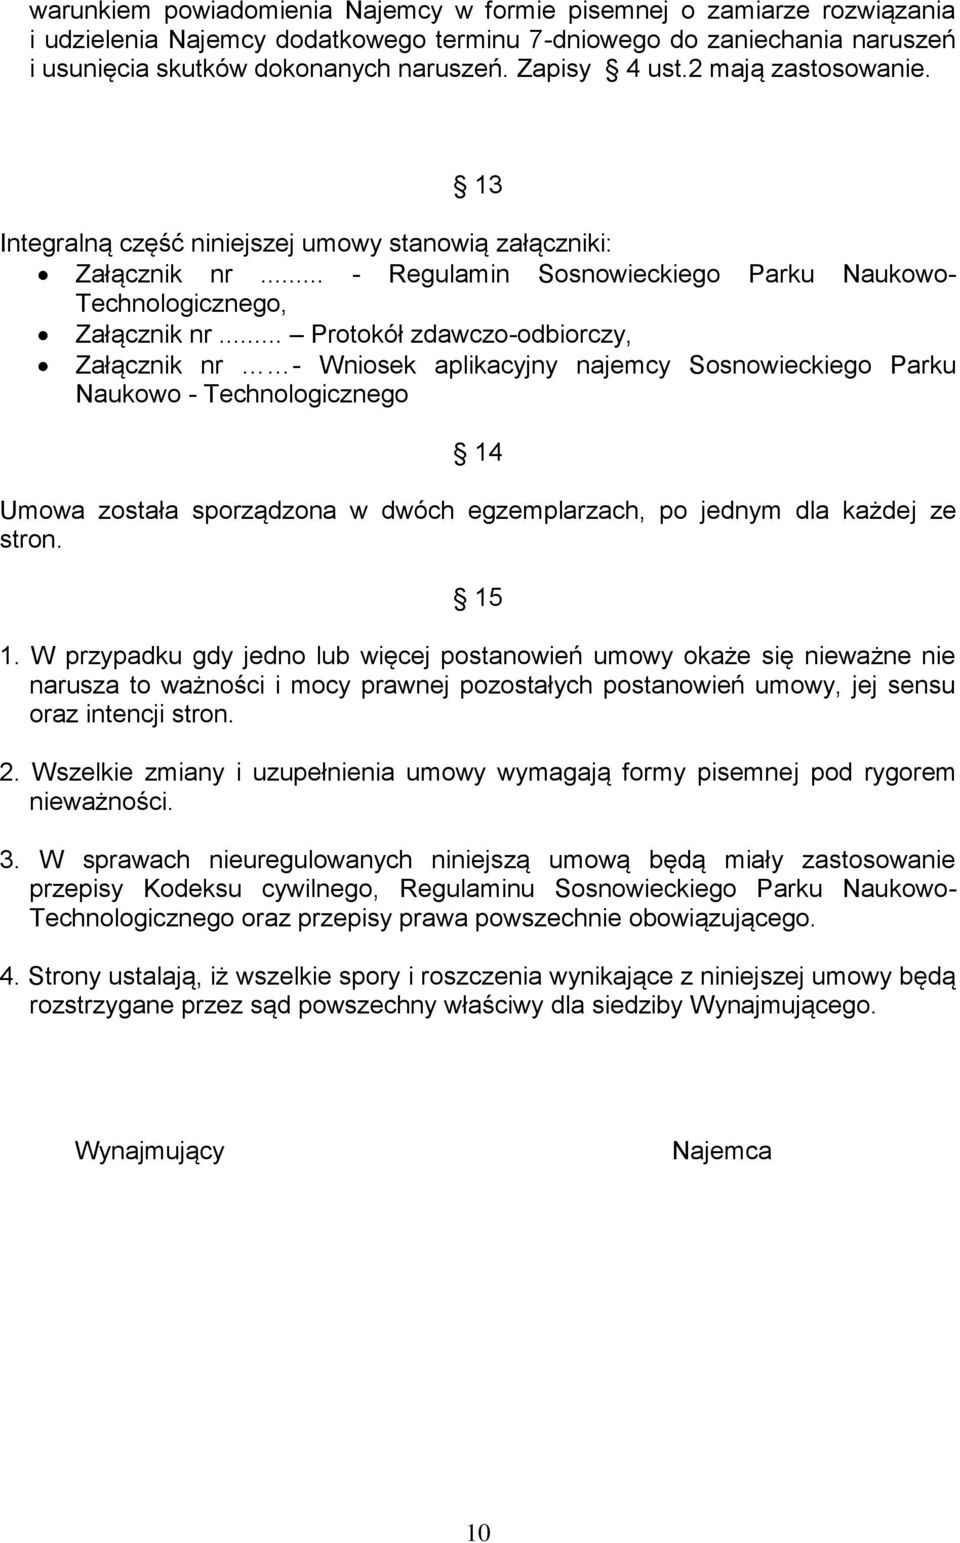 .. Protokół zdawczo-odbiorczy, Załącznik nr - Wniosek aplikacyjny najemcy Sosnowieckiego Parku Naukowo - Technologicznego 14 Umowa została sporządzona w dwóch egzemplarzach, po jednym dla każdej ze